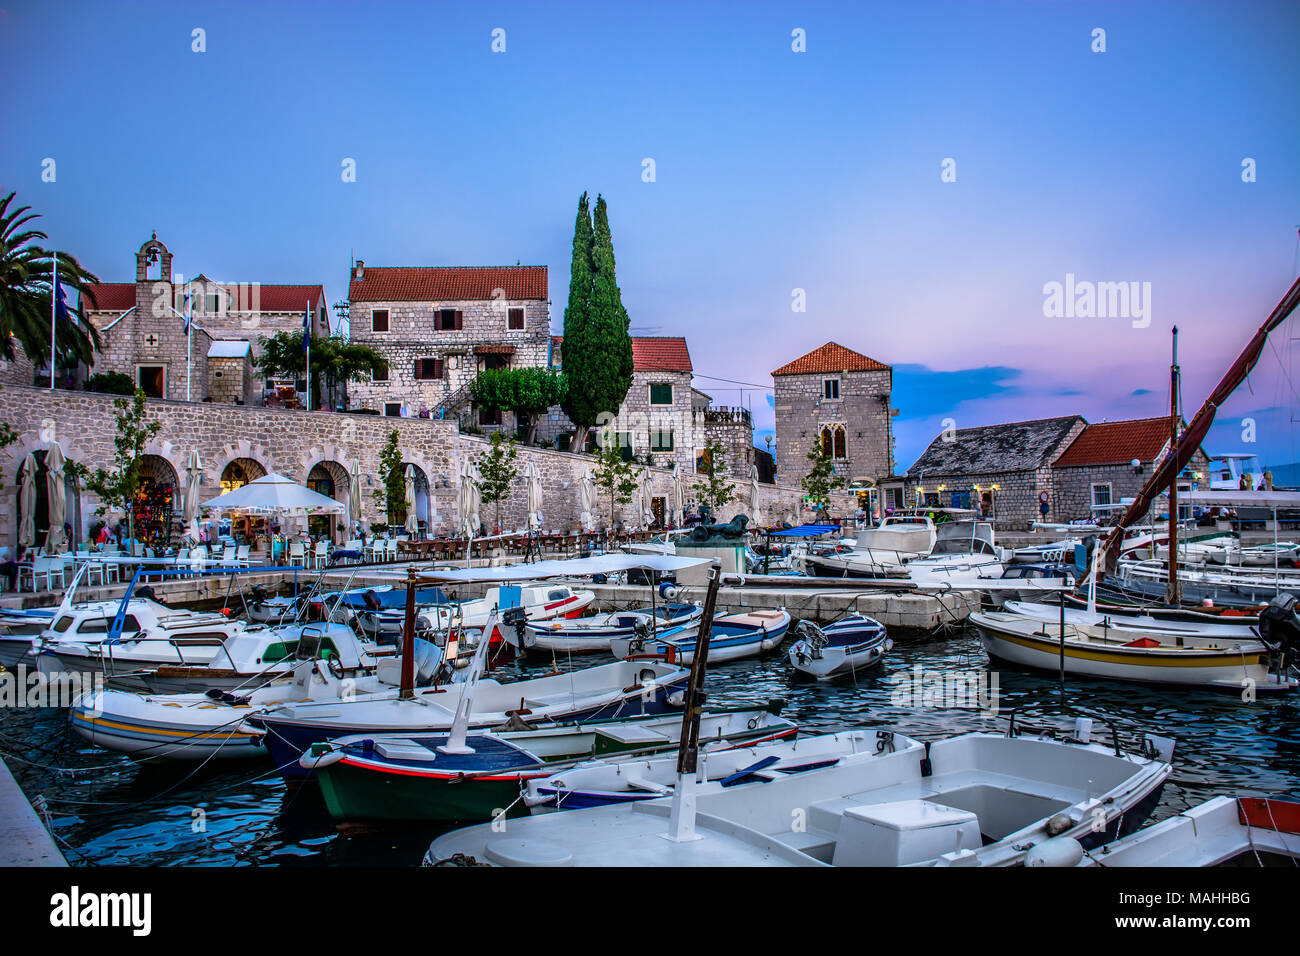 Vue panoramique au centre-ville d'Adriatic resort touristique célèbre Bol sur l'île de Brac. La Croatie. Banque D'Images